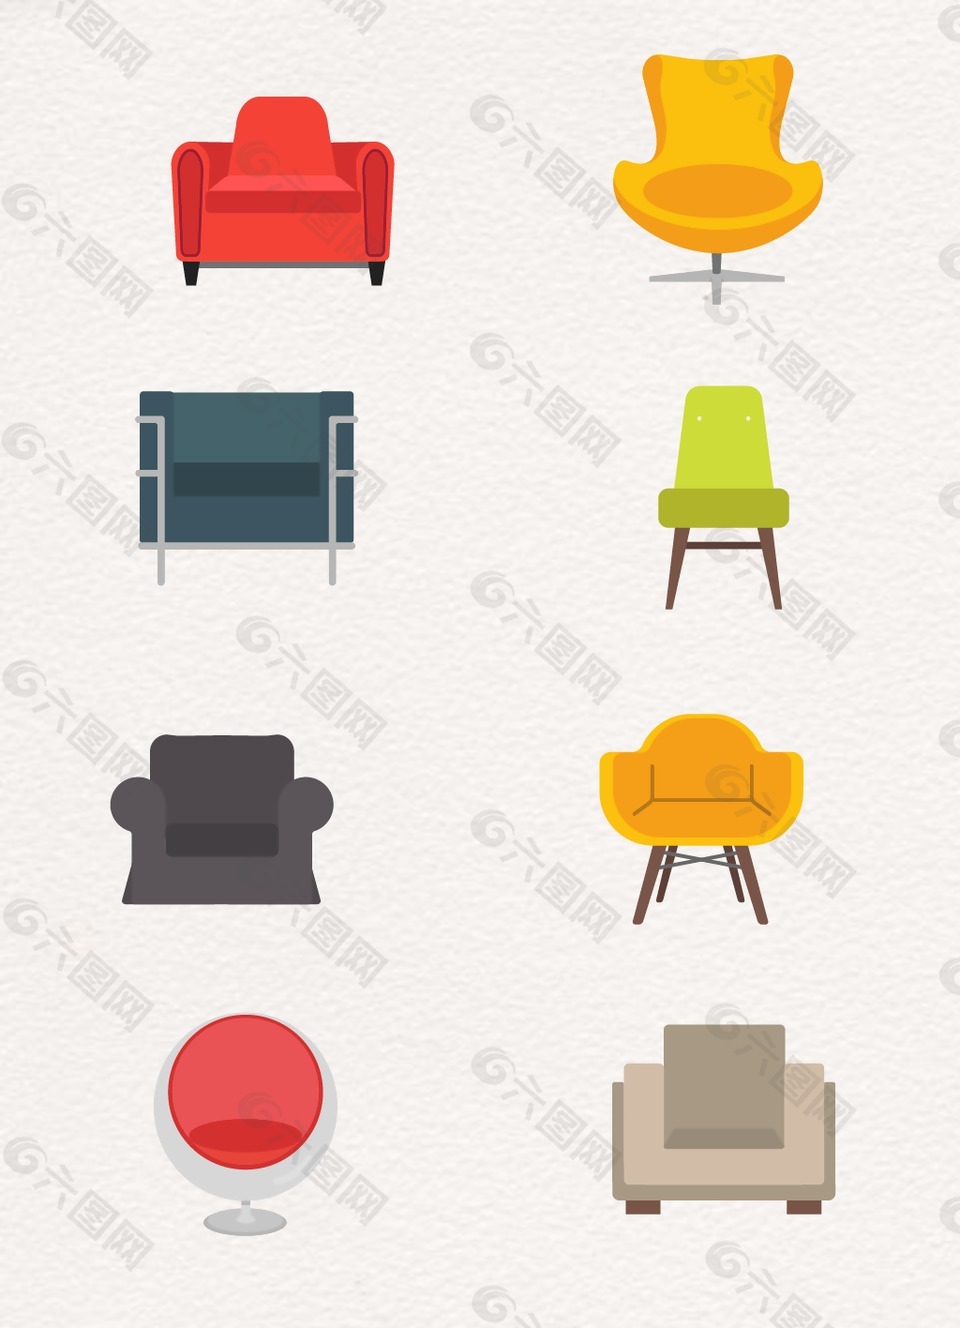 彩色卡通简约沙发设计